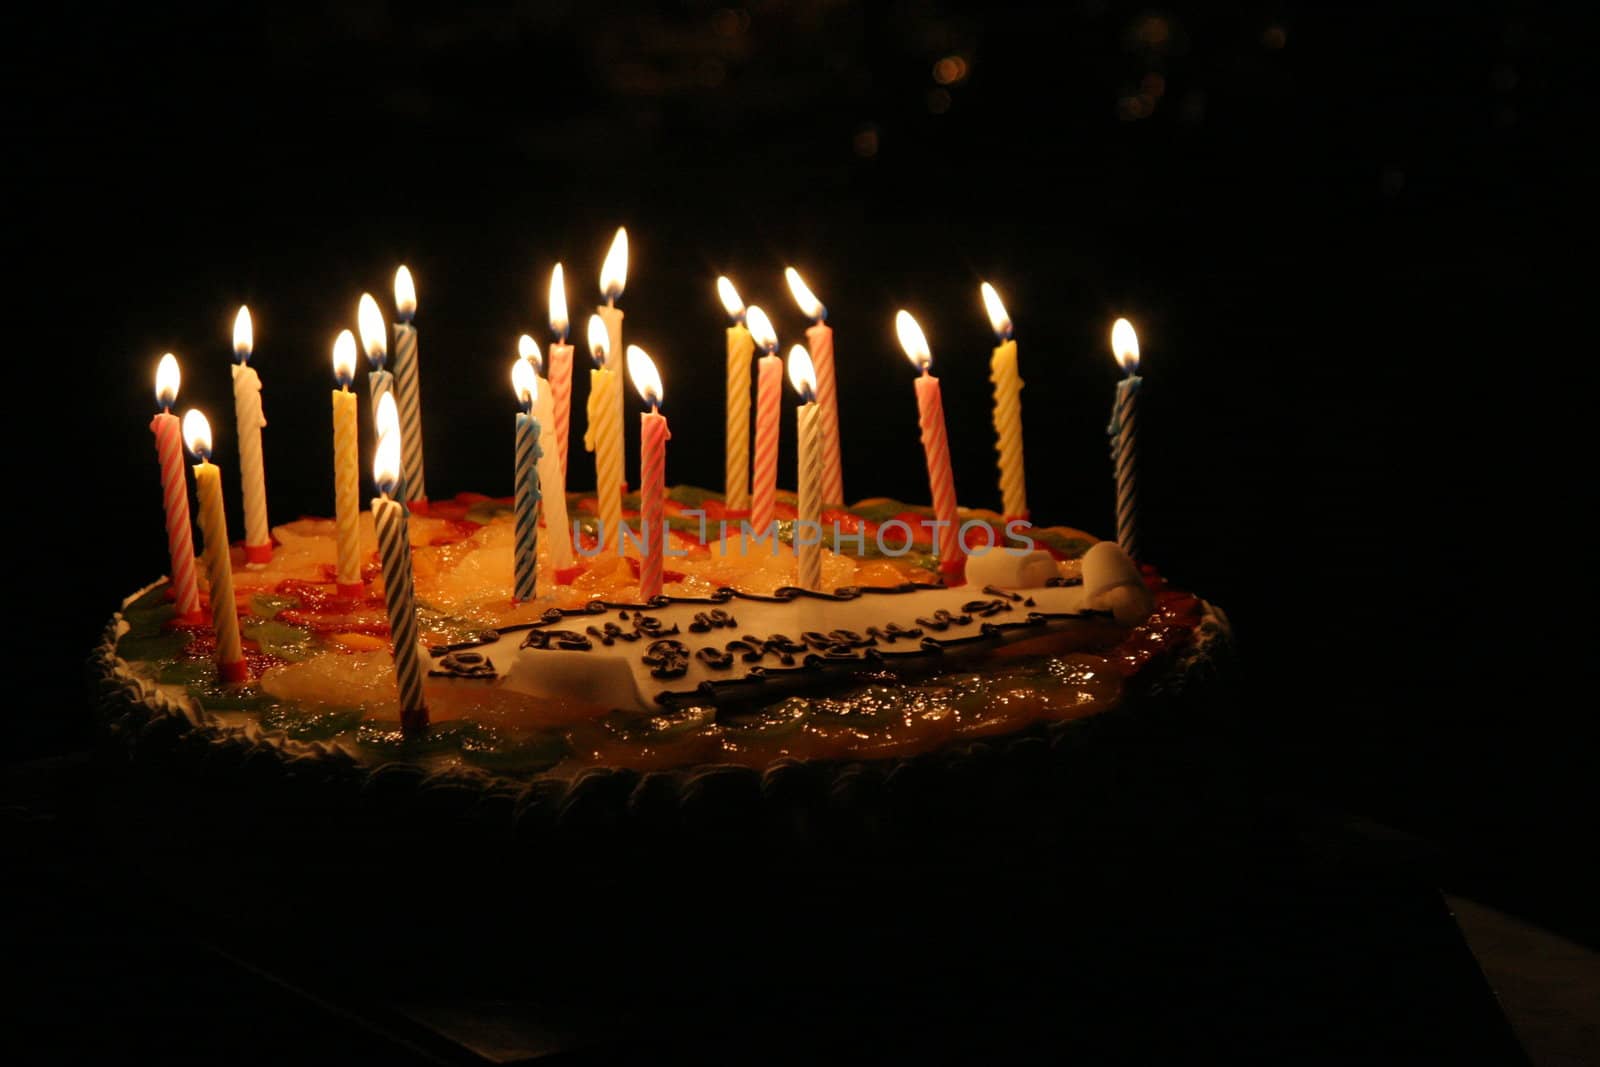 Pie "Happy birthday" by iar